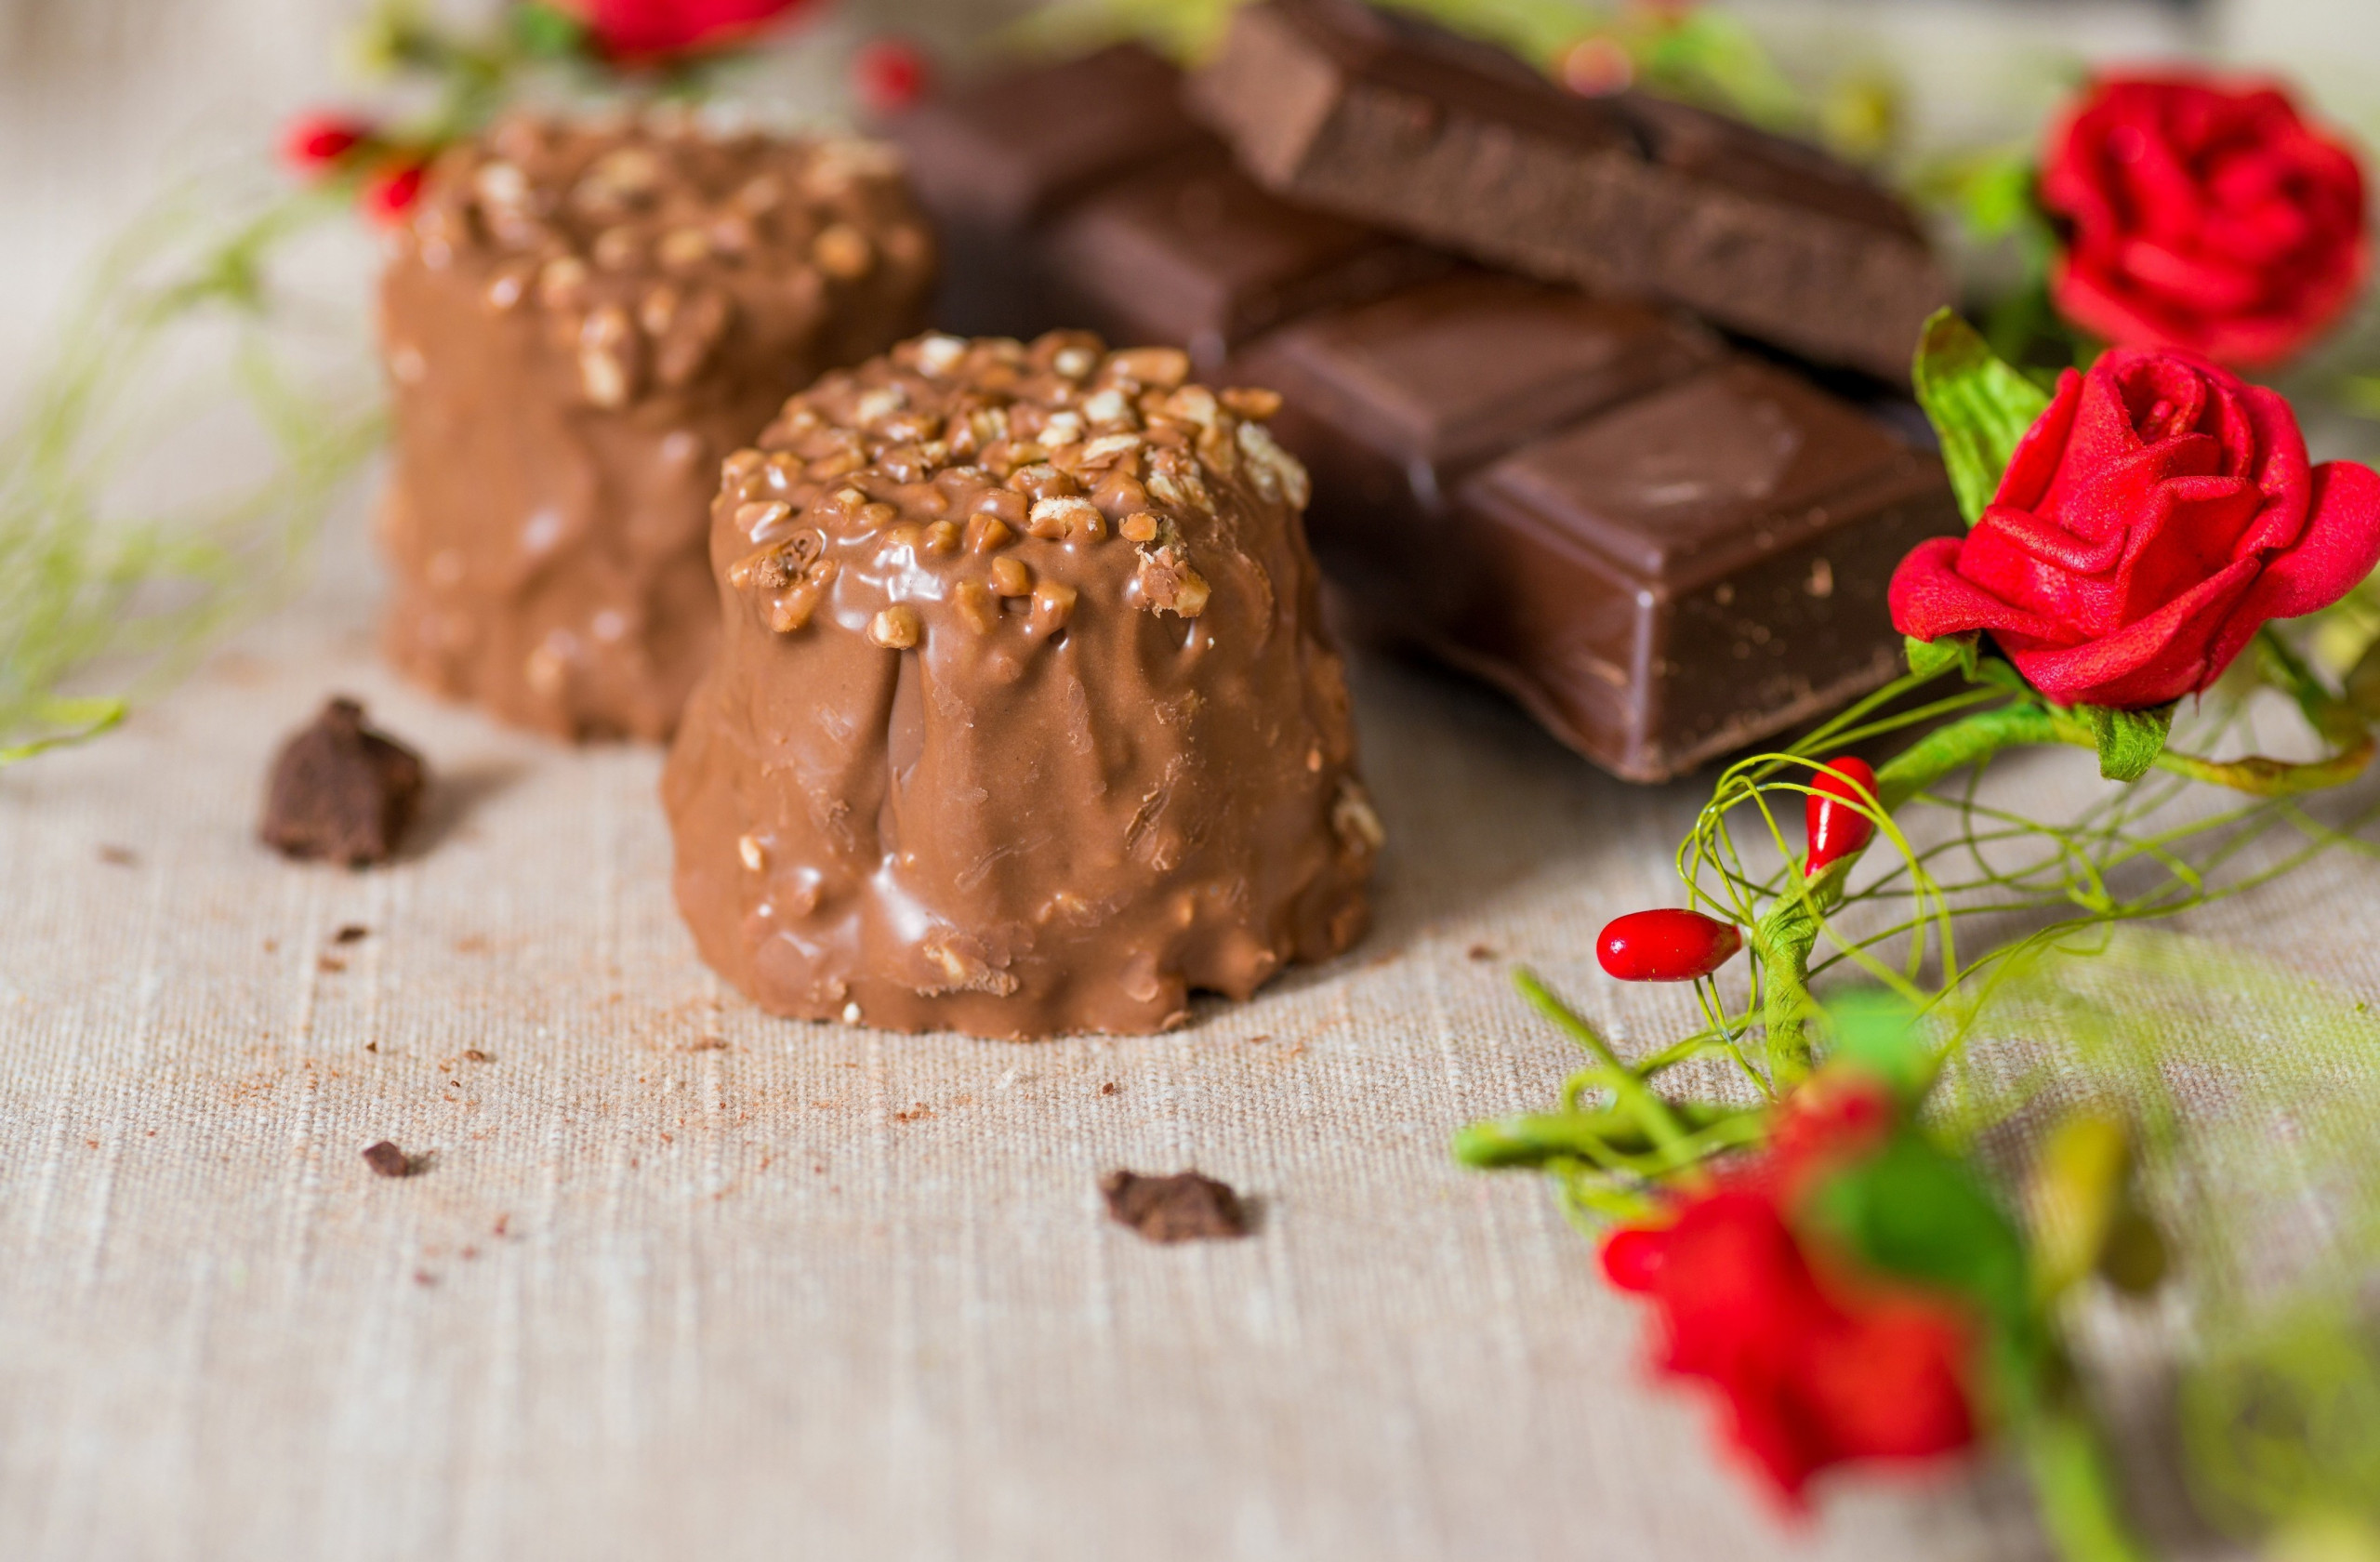 Bộ hình nền Chocolate ngọt ngào nhất cho những người hảo ngọt - [Kích thước hình ảnh: 2560x1680 px]